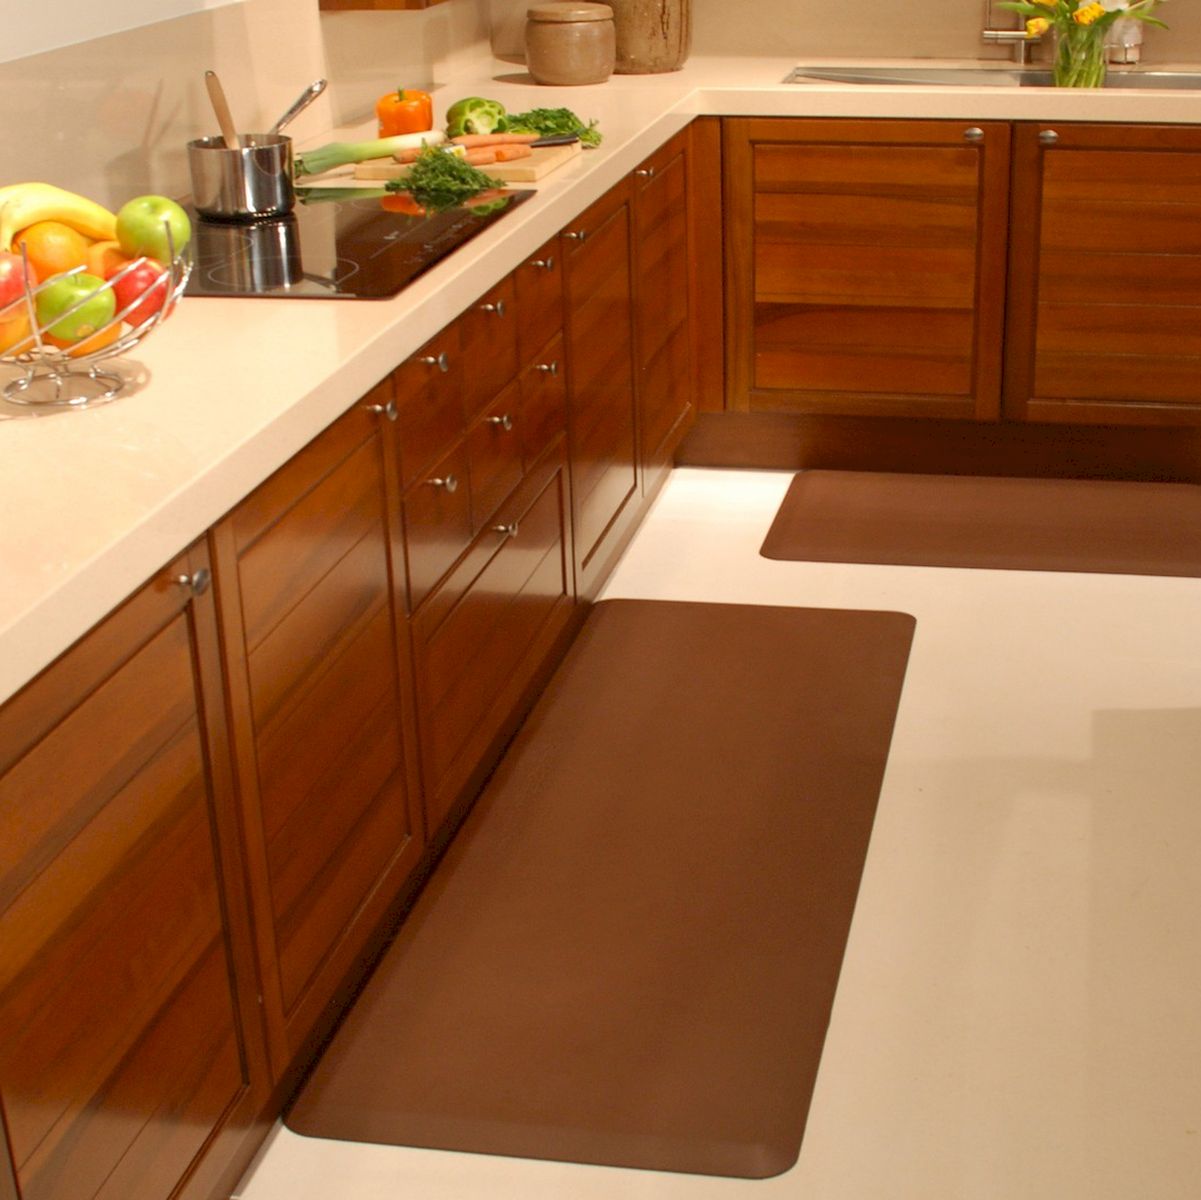 Padded Kitchen Floor Mats photo - 2